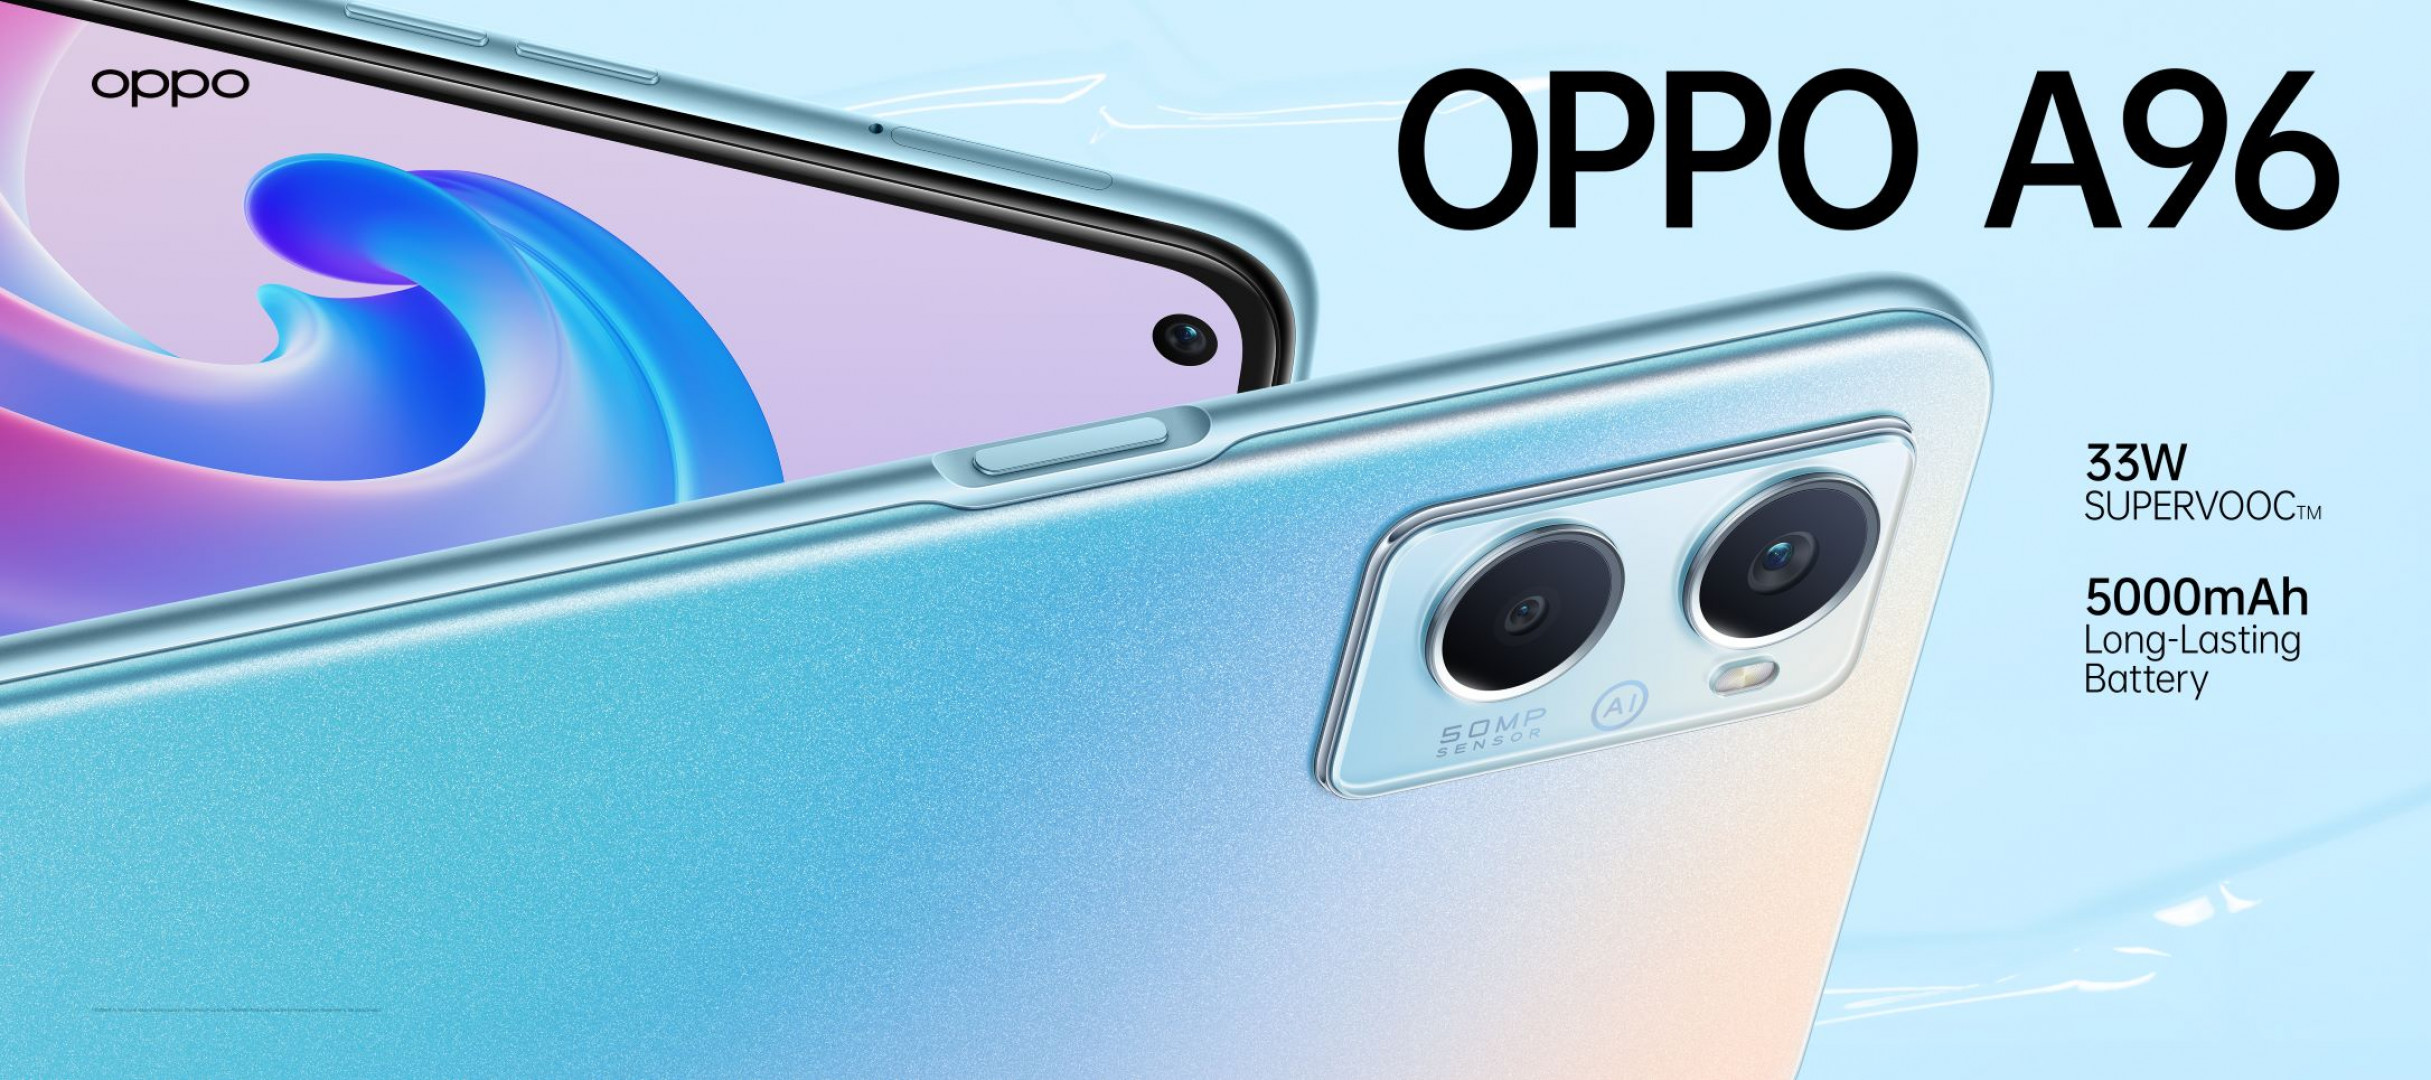 مواصفات وسعر الهاتف Oppo A96 4G مع المميزات والعيوب